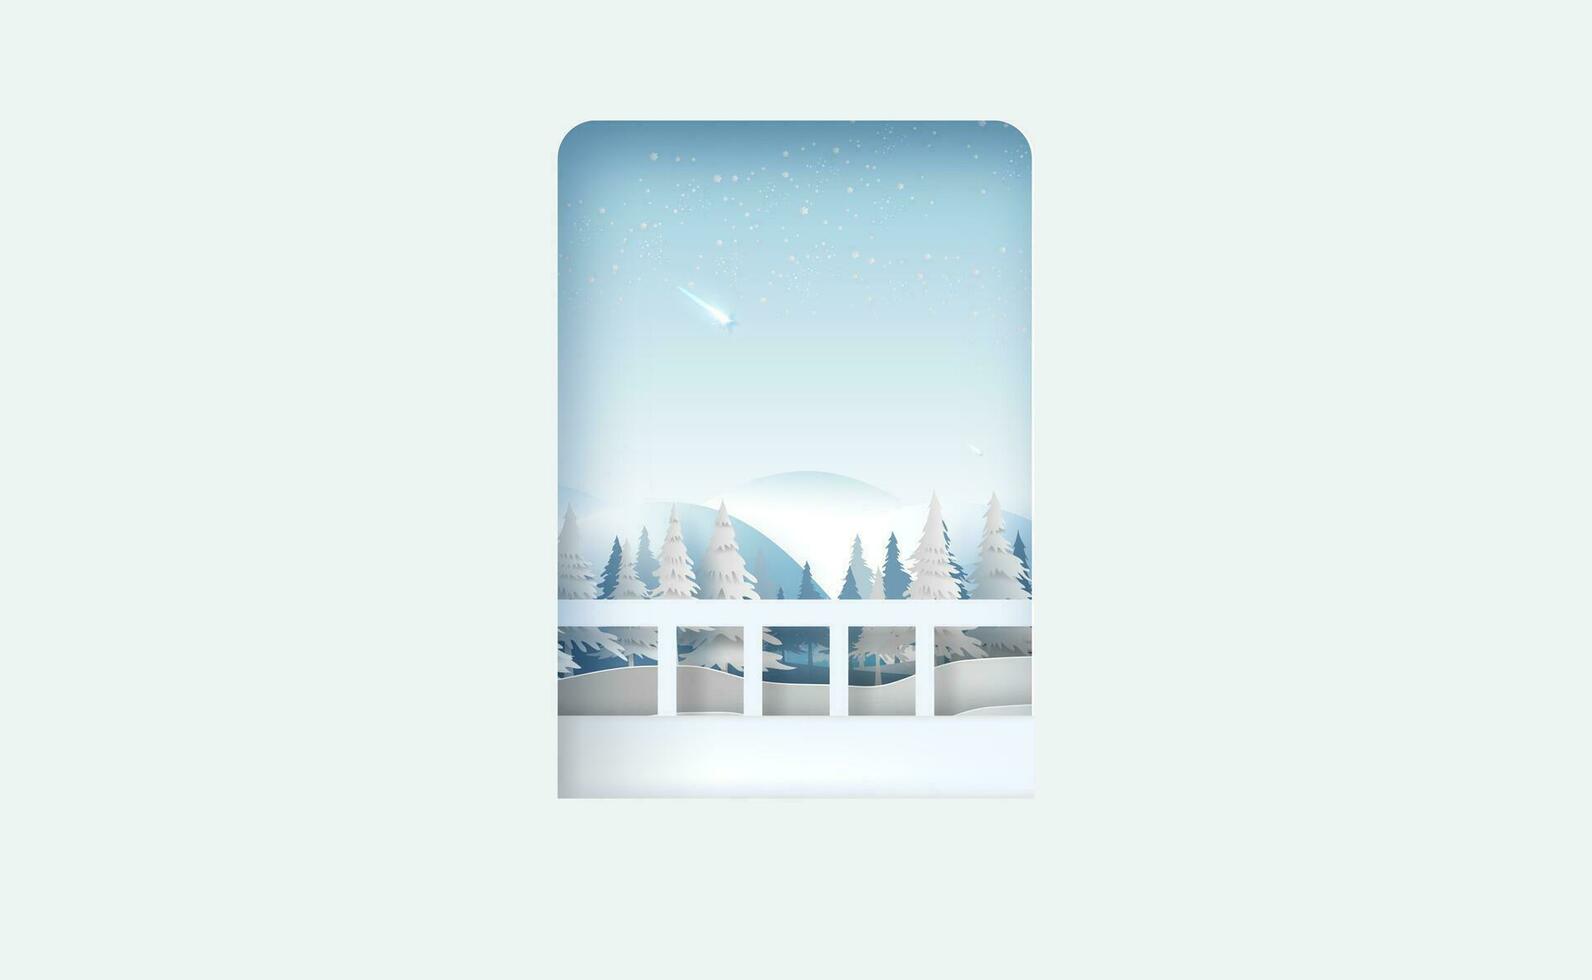 Visão olhando Fora porta para panorama Vejo montanha e floresta para inverno temporada.feliz Natal e feliz Novo ano dentro céu com tiroteio estrelas. flocos de neve em azul fundo papel cortar e construir estilo. vetor